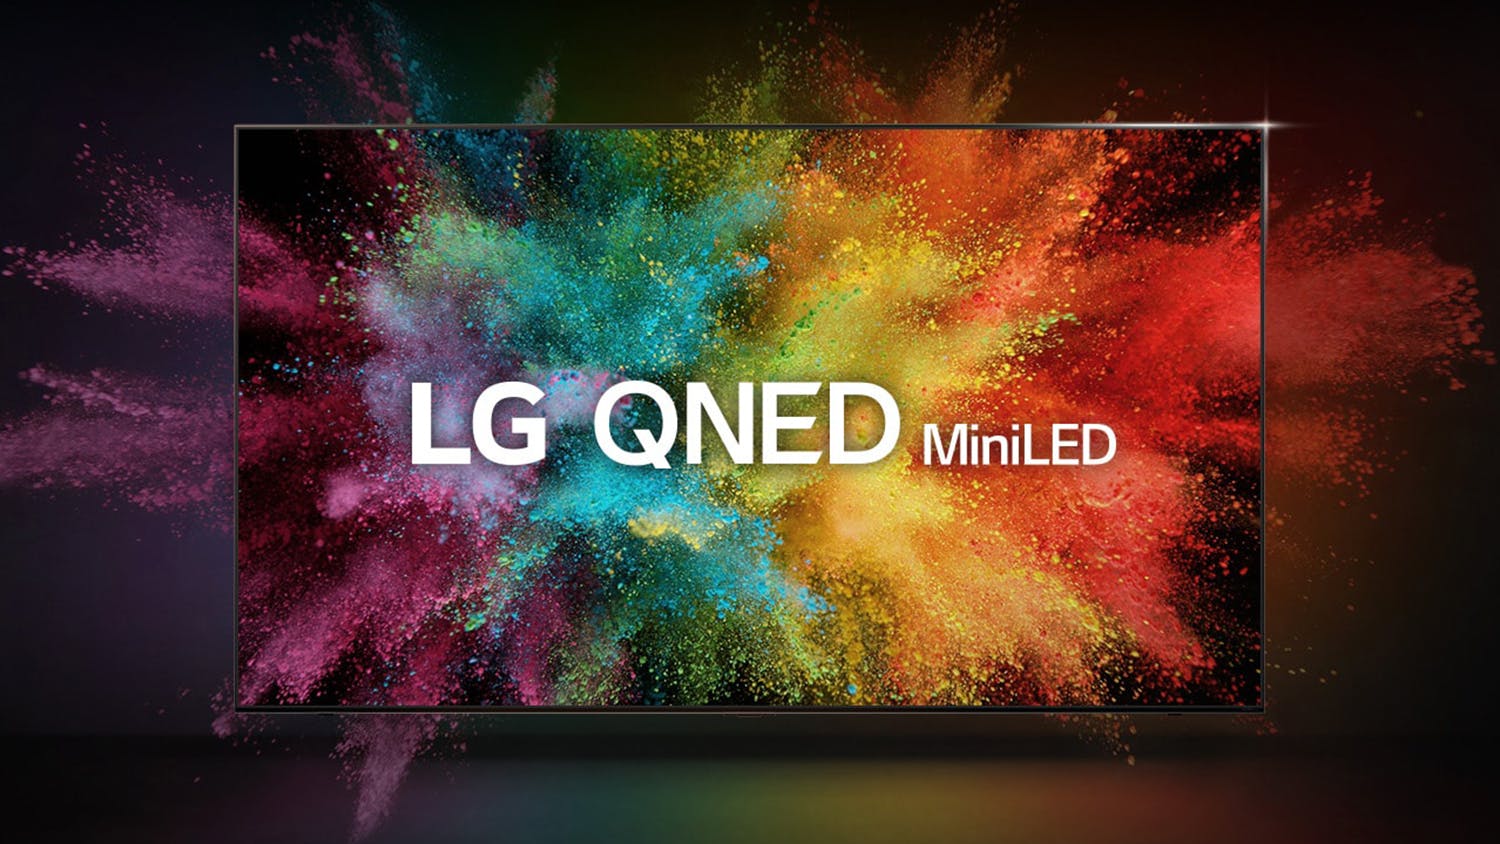 LG 65" Premium QNED86 Smart 4K QNED Mini-LED TV